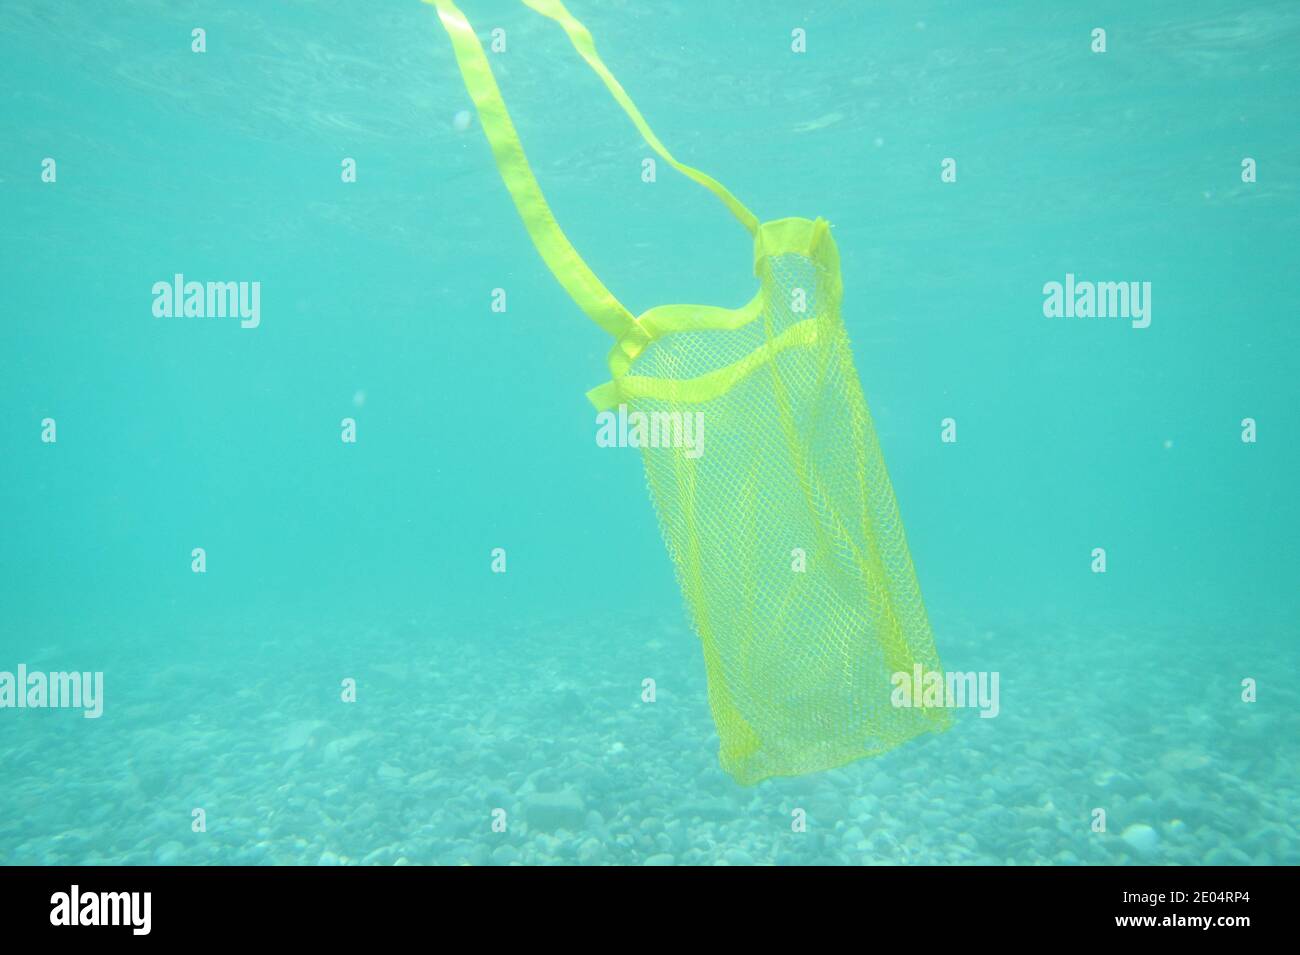 Vue d'un sac jaune sous l'eau Banque D'Images